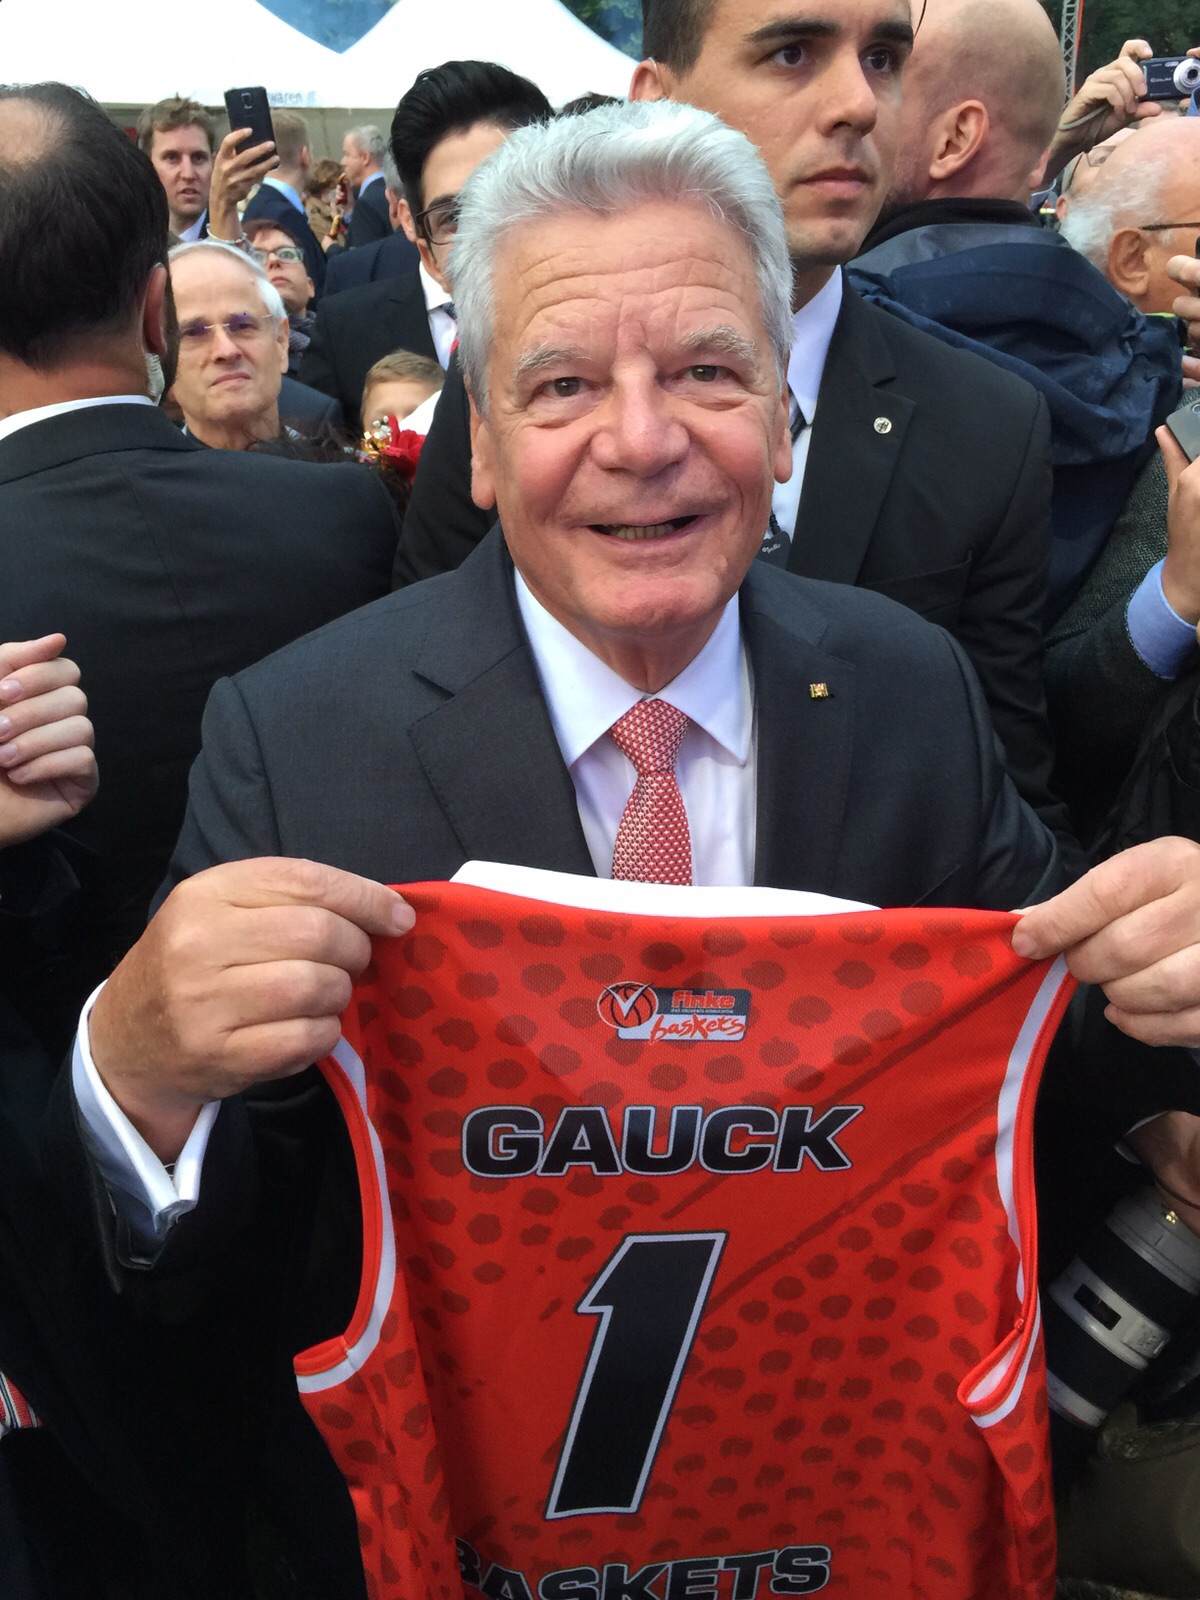 Bundespräsident Joachim Gauck mit seinem finke baskets-Trikot